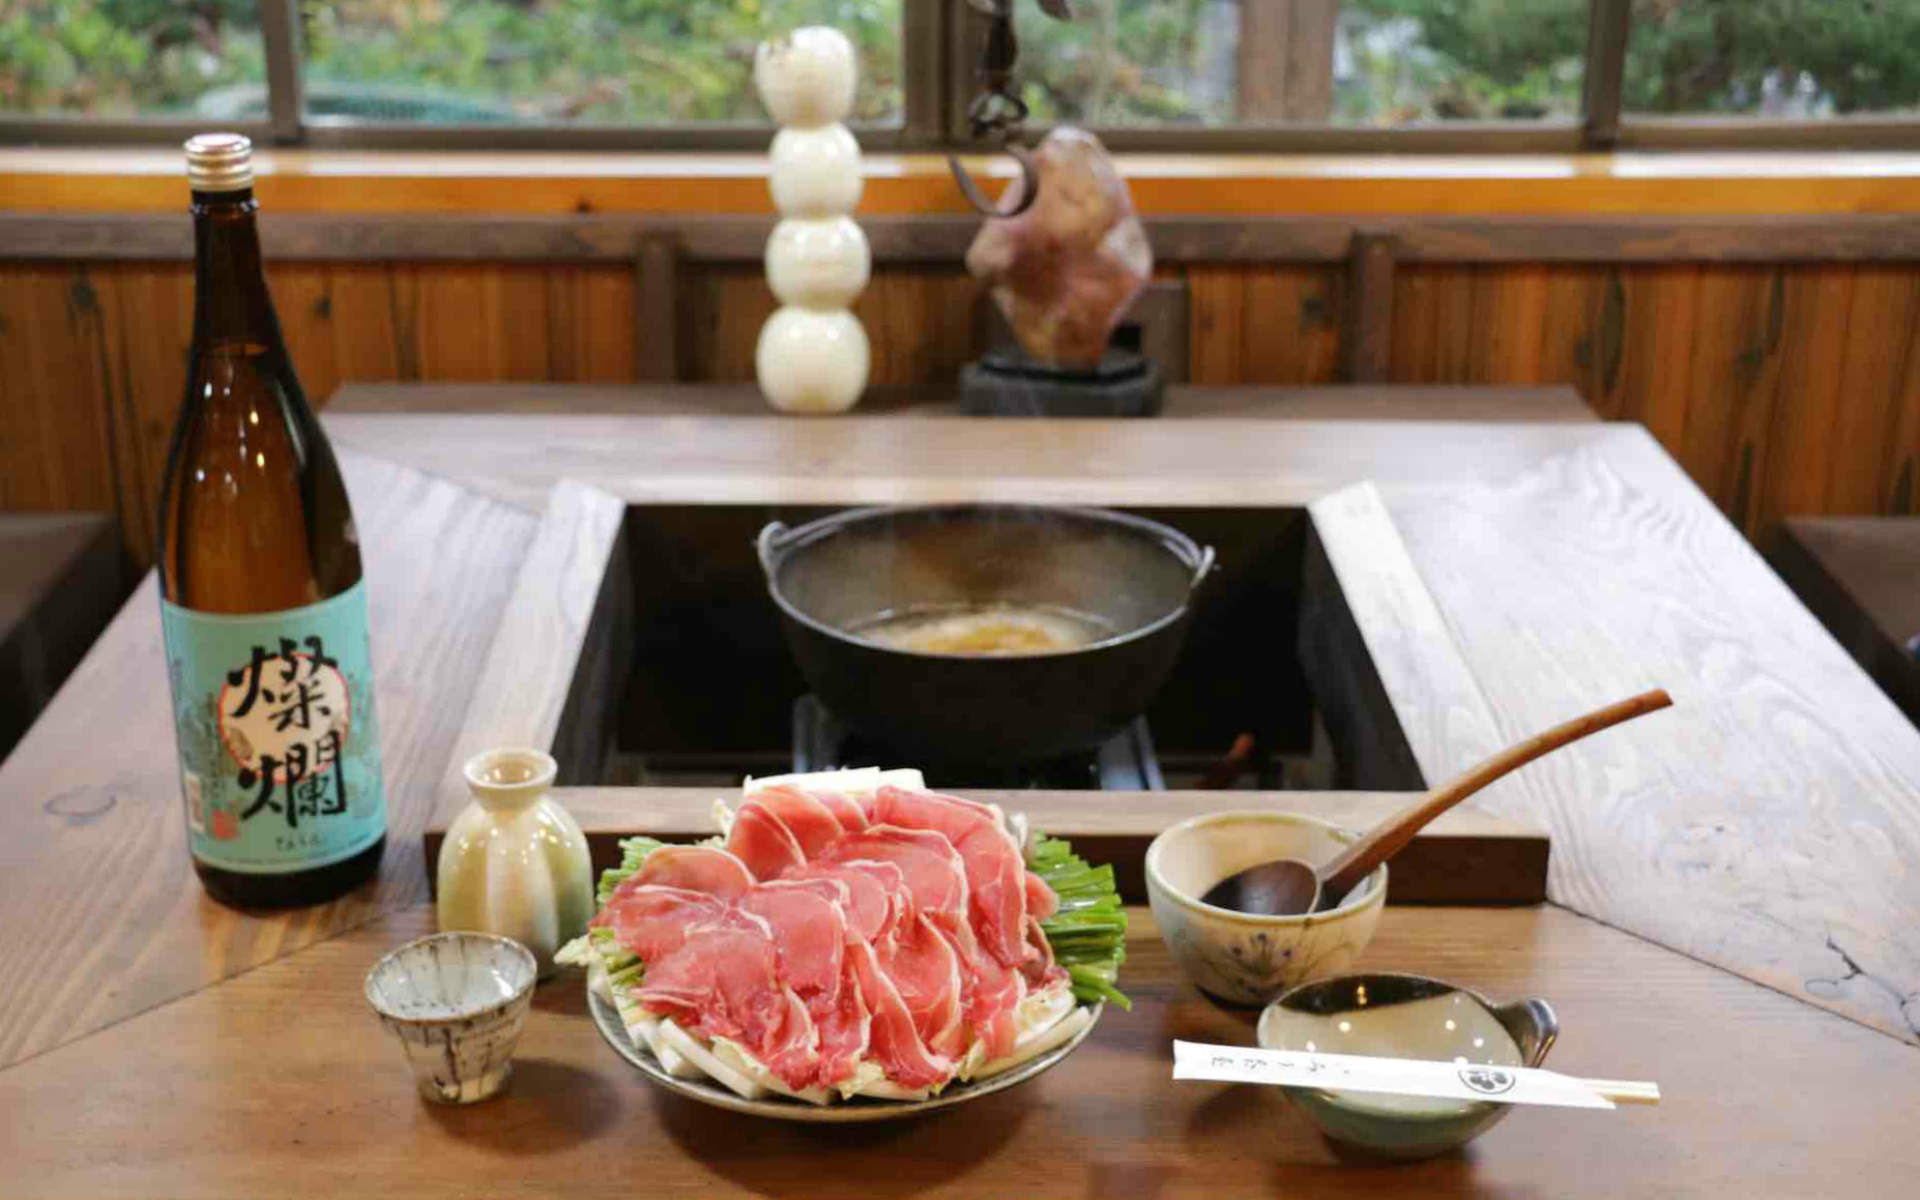 益子「いろり茶屋」で味わうイノシシ鍋。益子焼の器に「燦爛」の燗酒を